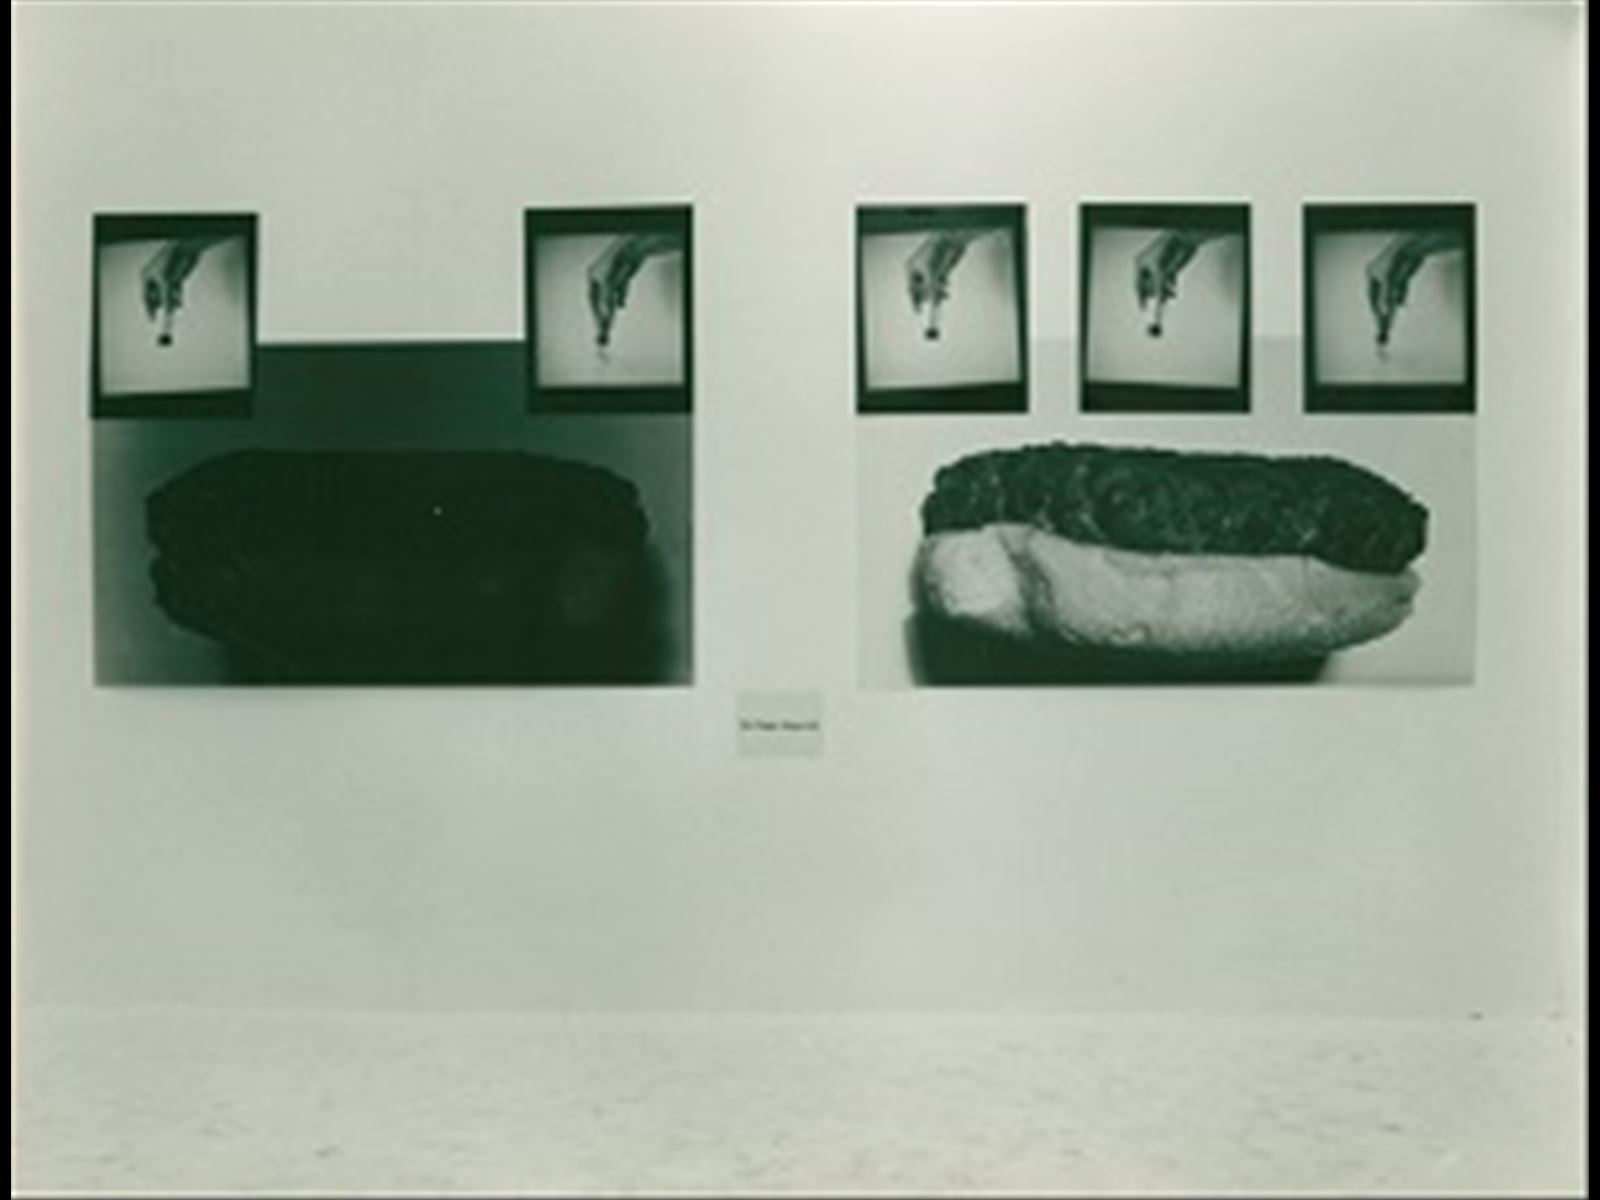 Bill Beckley, D'Alessandro Ferranti. Roma, 1976. Archivio Galleria  Ugo Ferranti.